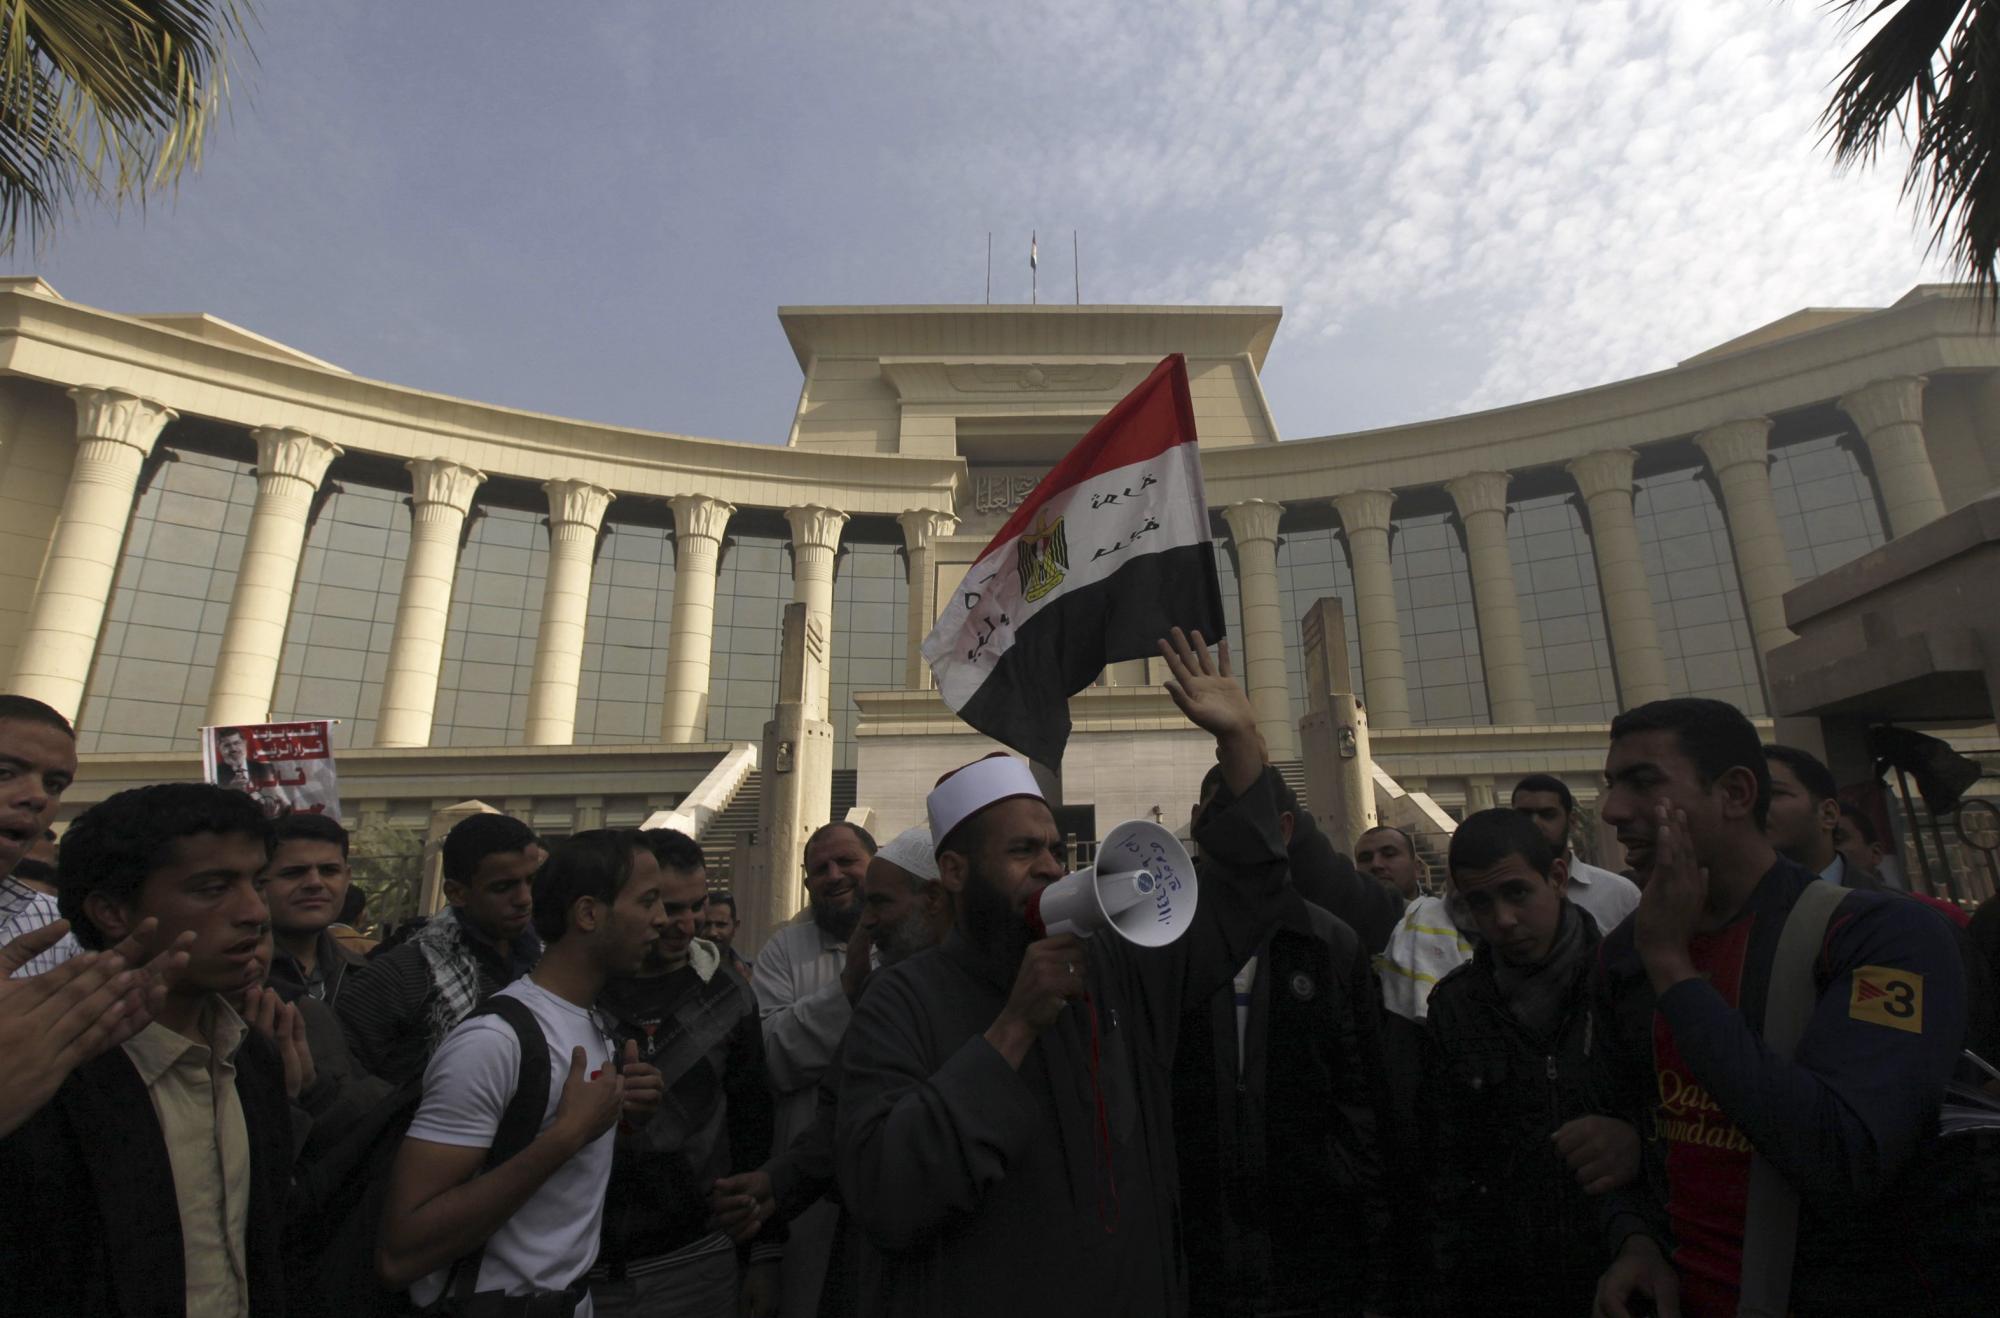 埃及总统支持者“逼停”最高宪法法院 穆尔西提议各派别对话